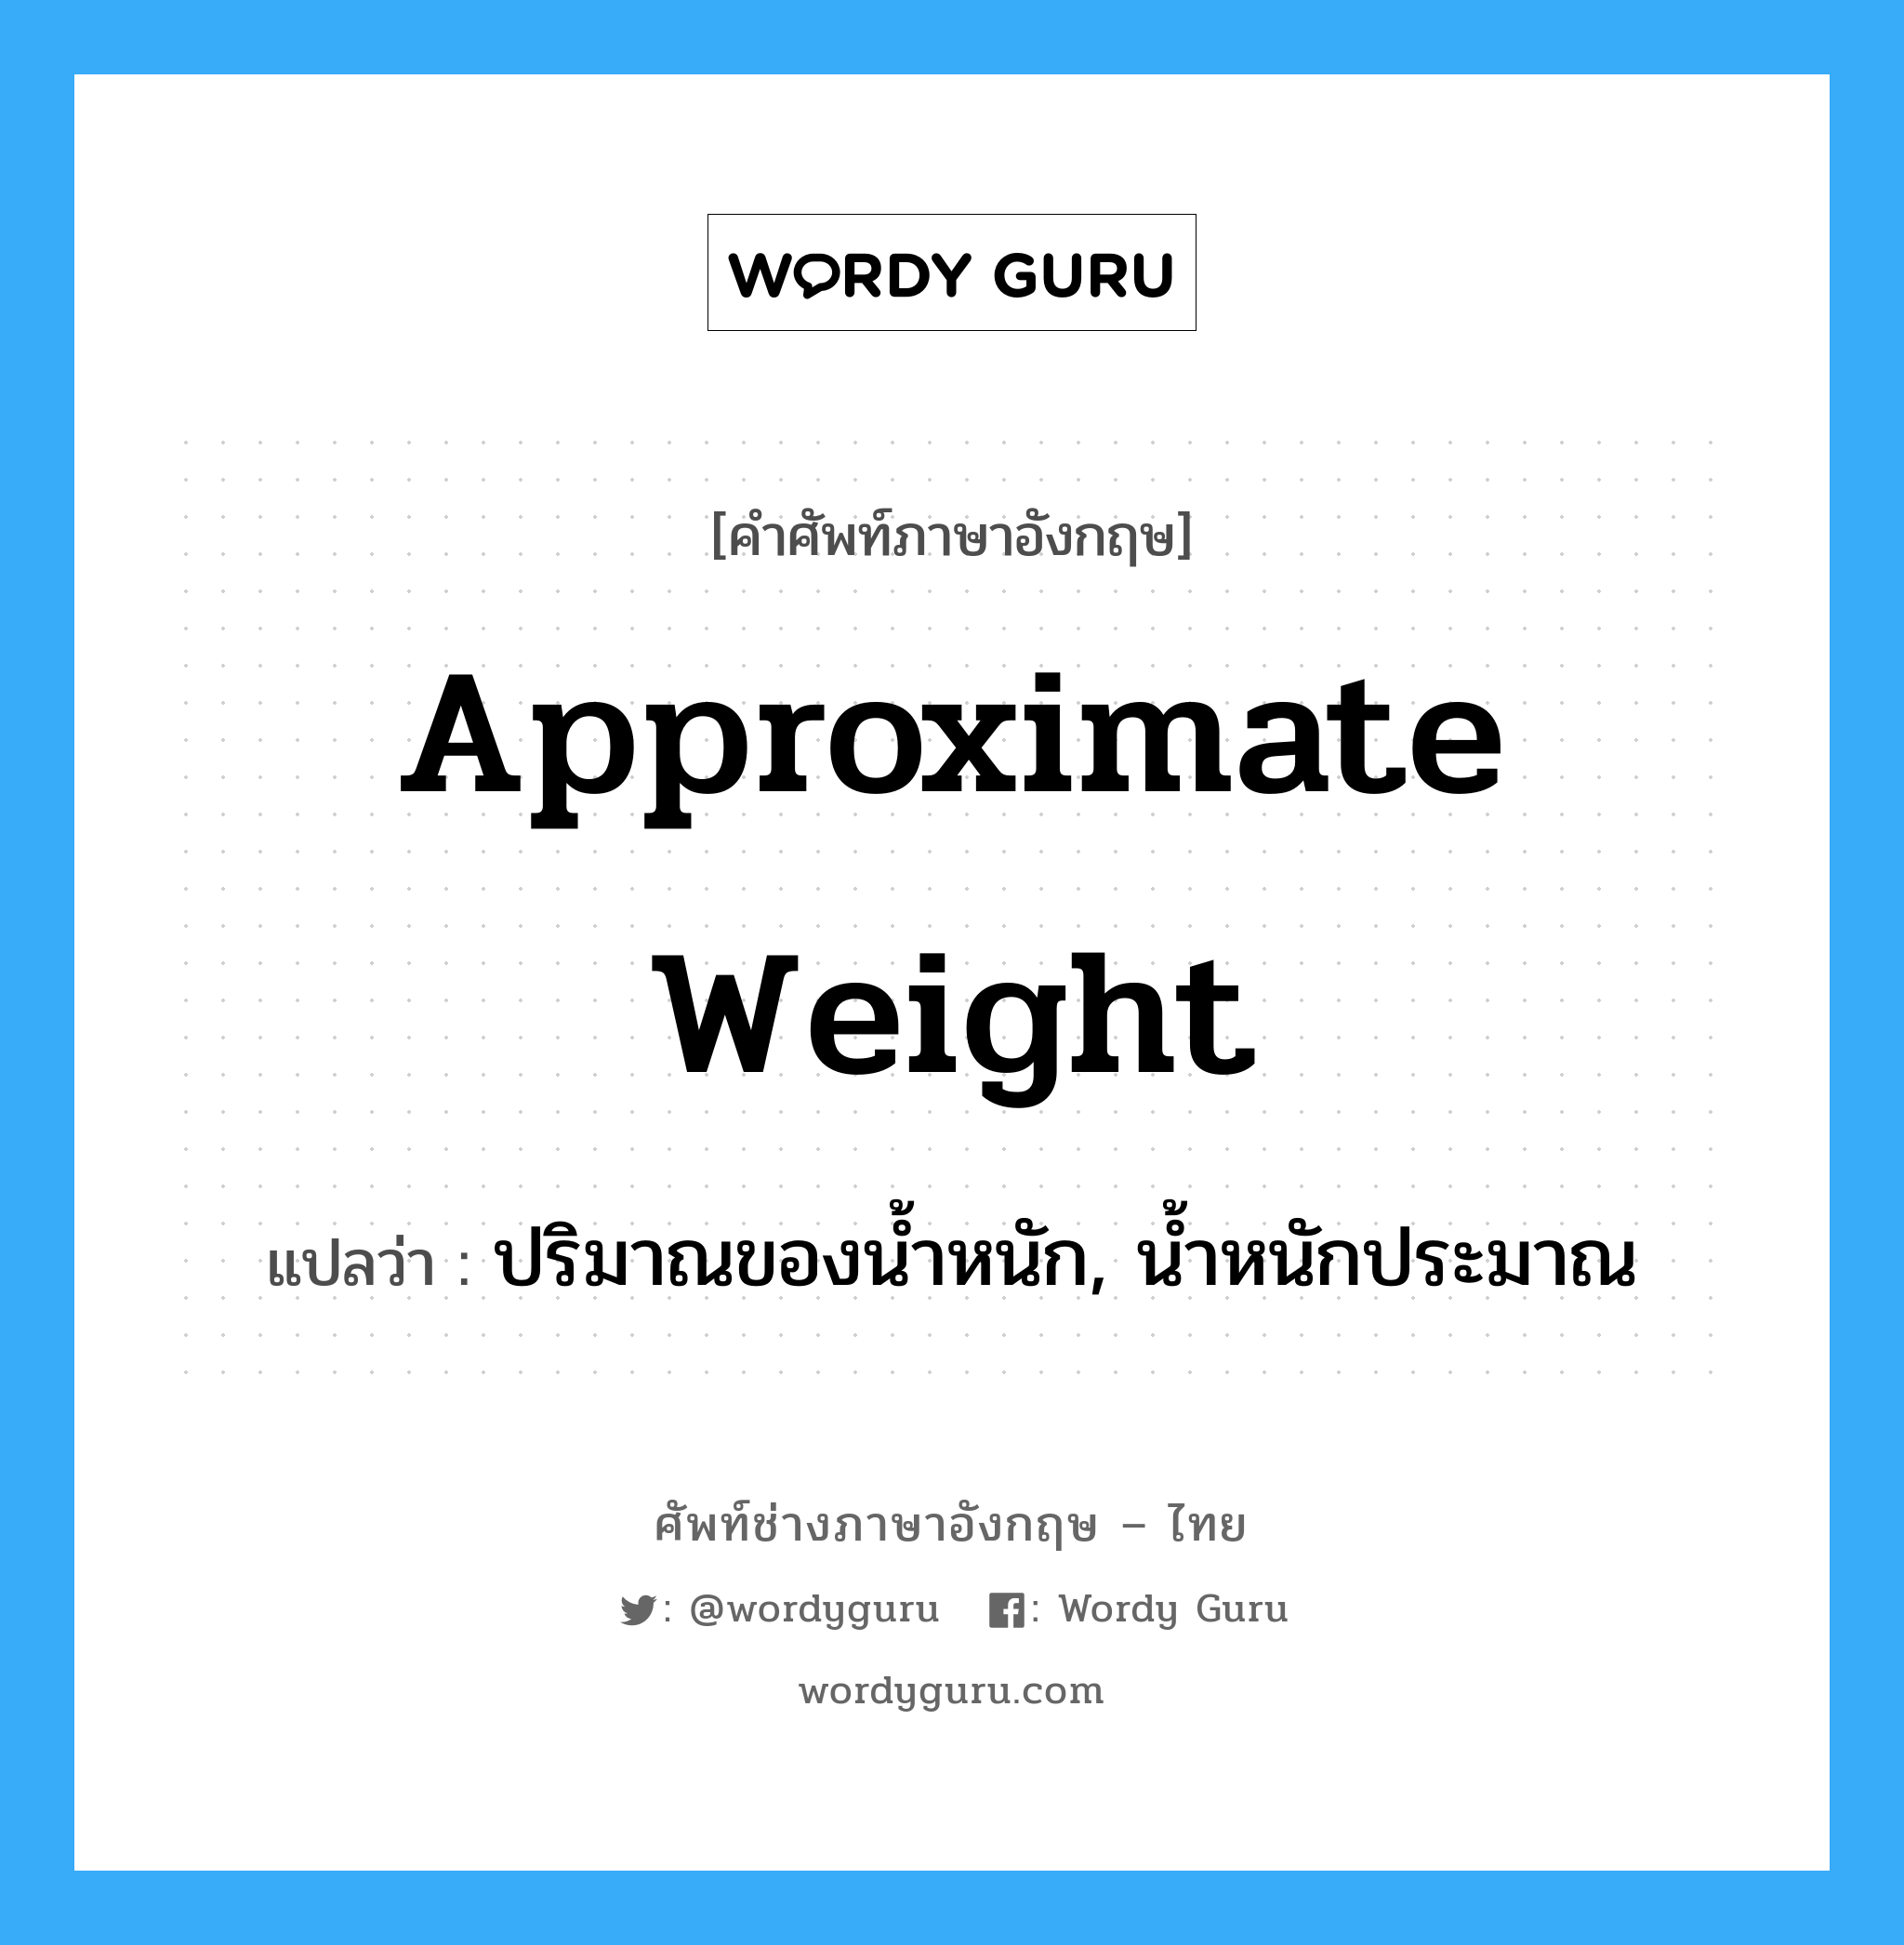 ปริมาณของน้ำหนัก, น้ำหนักประมาณ ภาษาอังกฤษ? | Wordy Guru